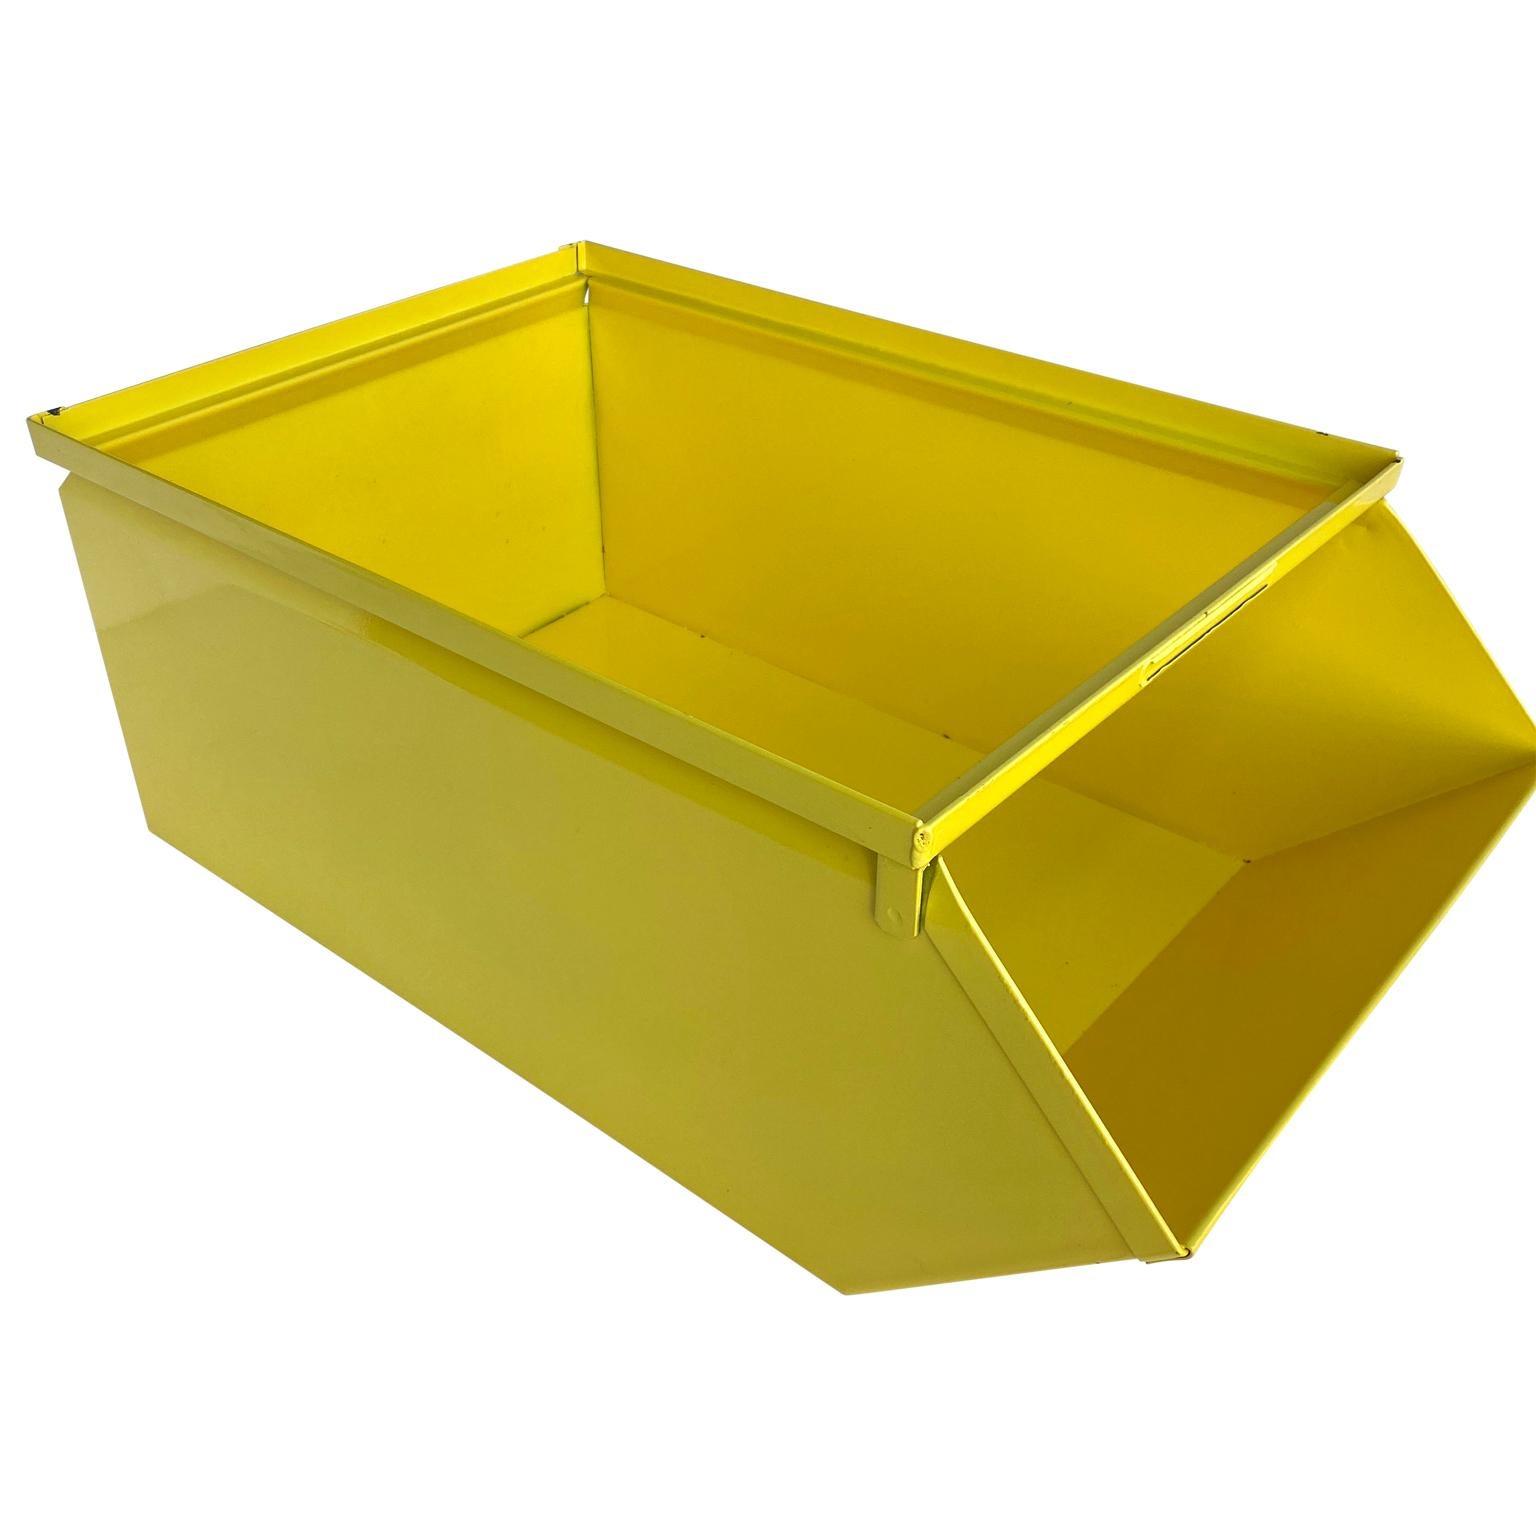 Industriel Collection de grandes boîtes industrielles en métal jaune soleil revêtues de poudre en vente